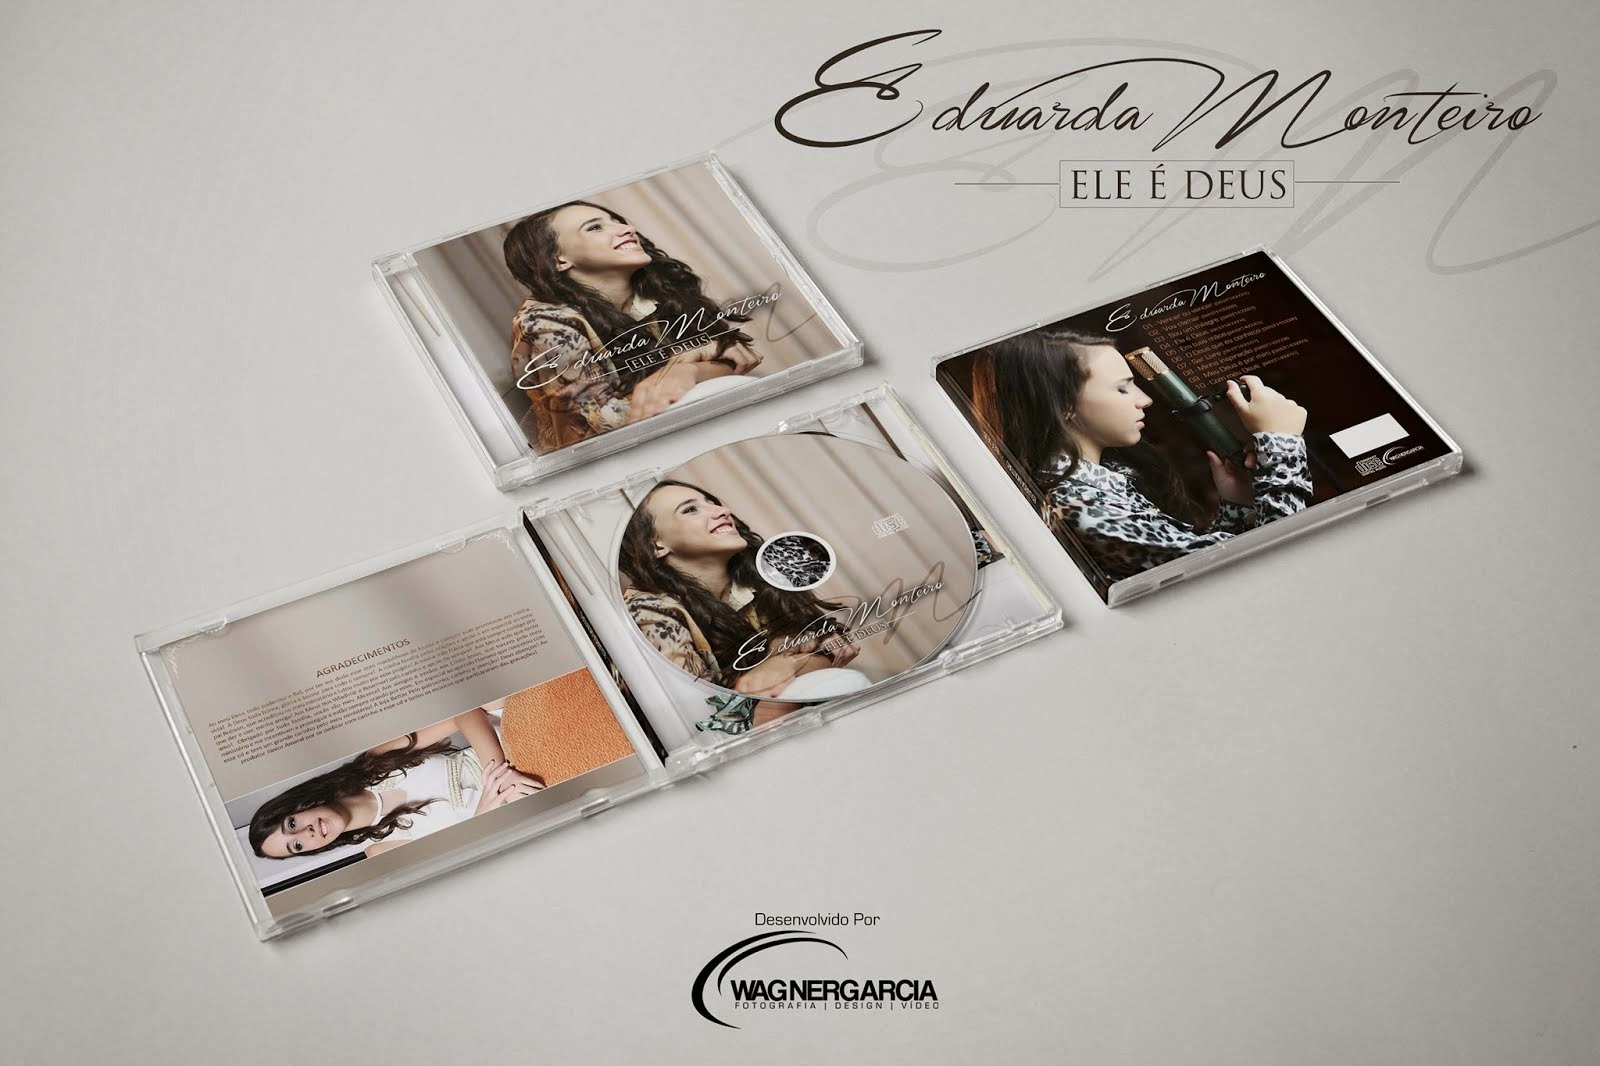 O CD de Eduarda Monteiro já está pronto. Deus é fiel Ele cumpriu oque prometeu